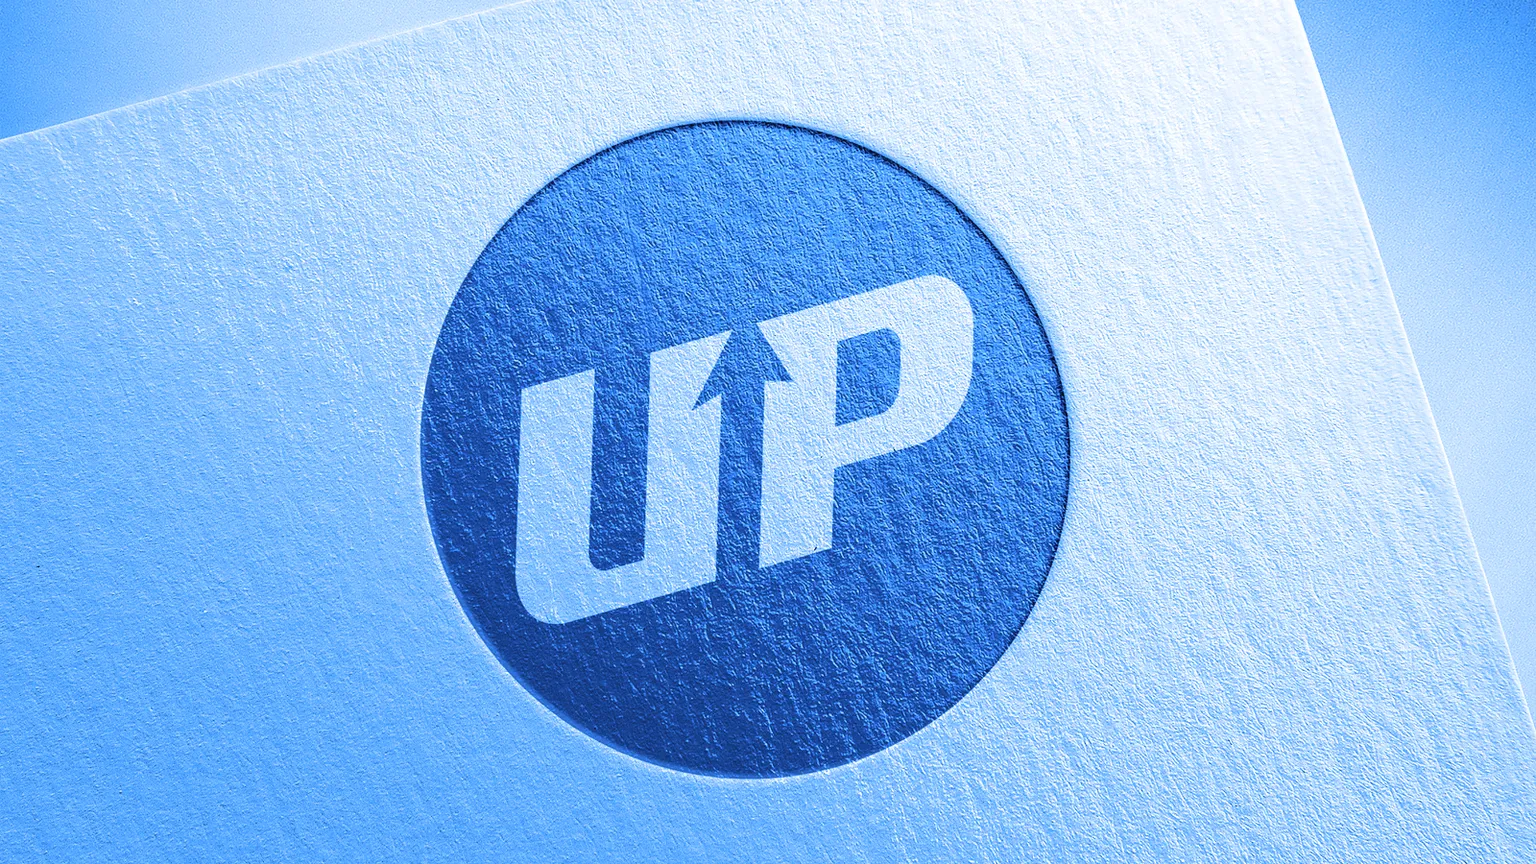 Upbit es una de las mayores plataformas de criptomonedas de Corea del Sur. Imagen: Shutterstock